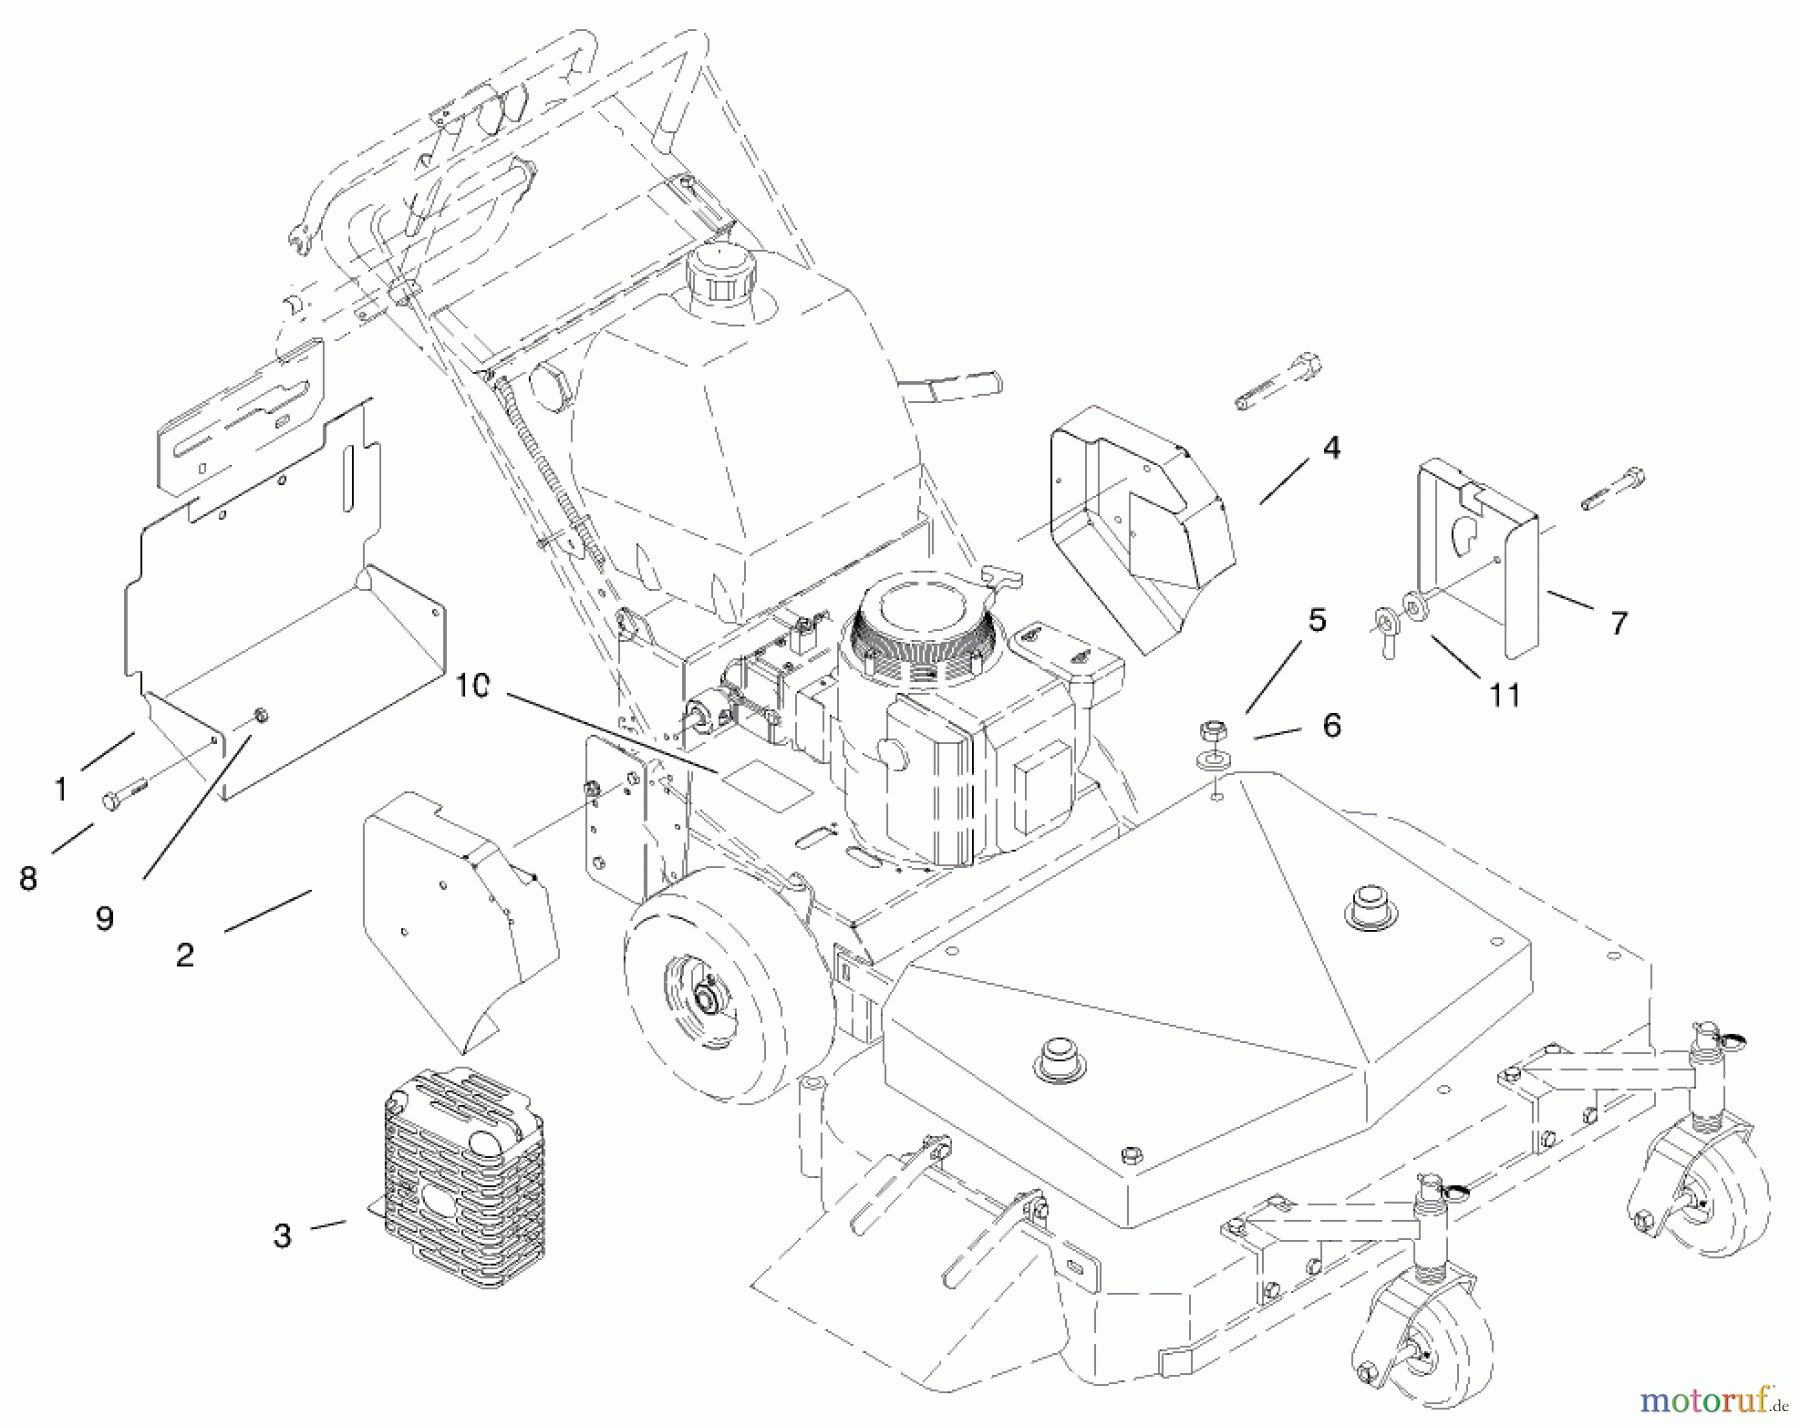  Rasenmäher für Großflächen 30184 - Toro Mid-Size ProLine Mower, Gear Drive, 13 hp, 91cm Side Discharge Deck (SN: 890001 - 899999) (1998) GUARD-BELT, MUFFLER & REAR DISCHARGE